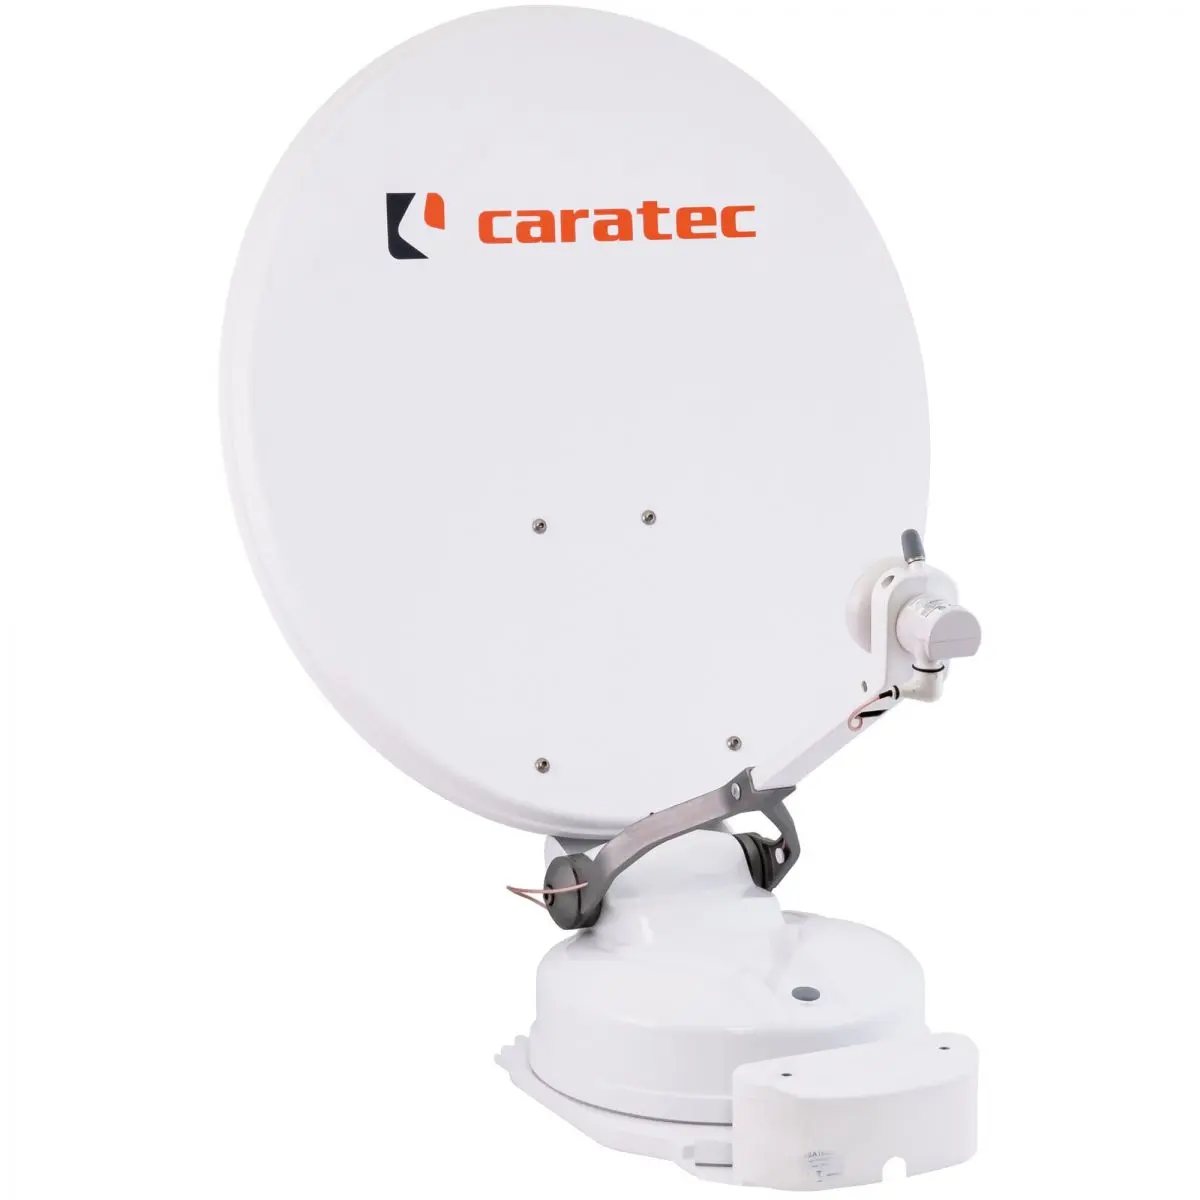 Caratec CASAT 600D műholdrendszer